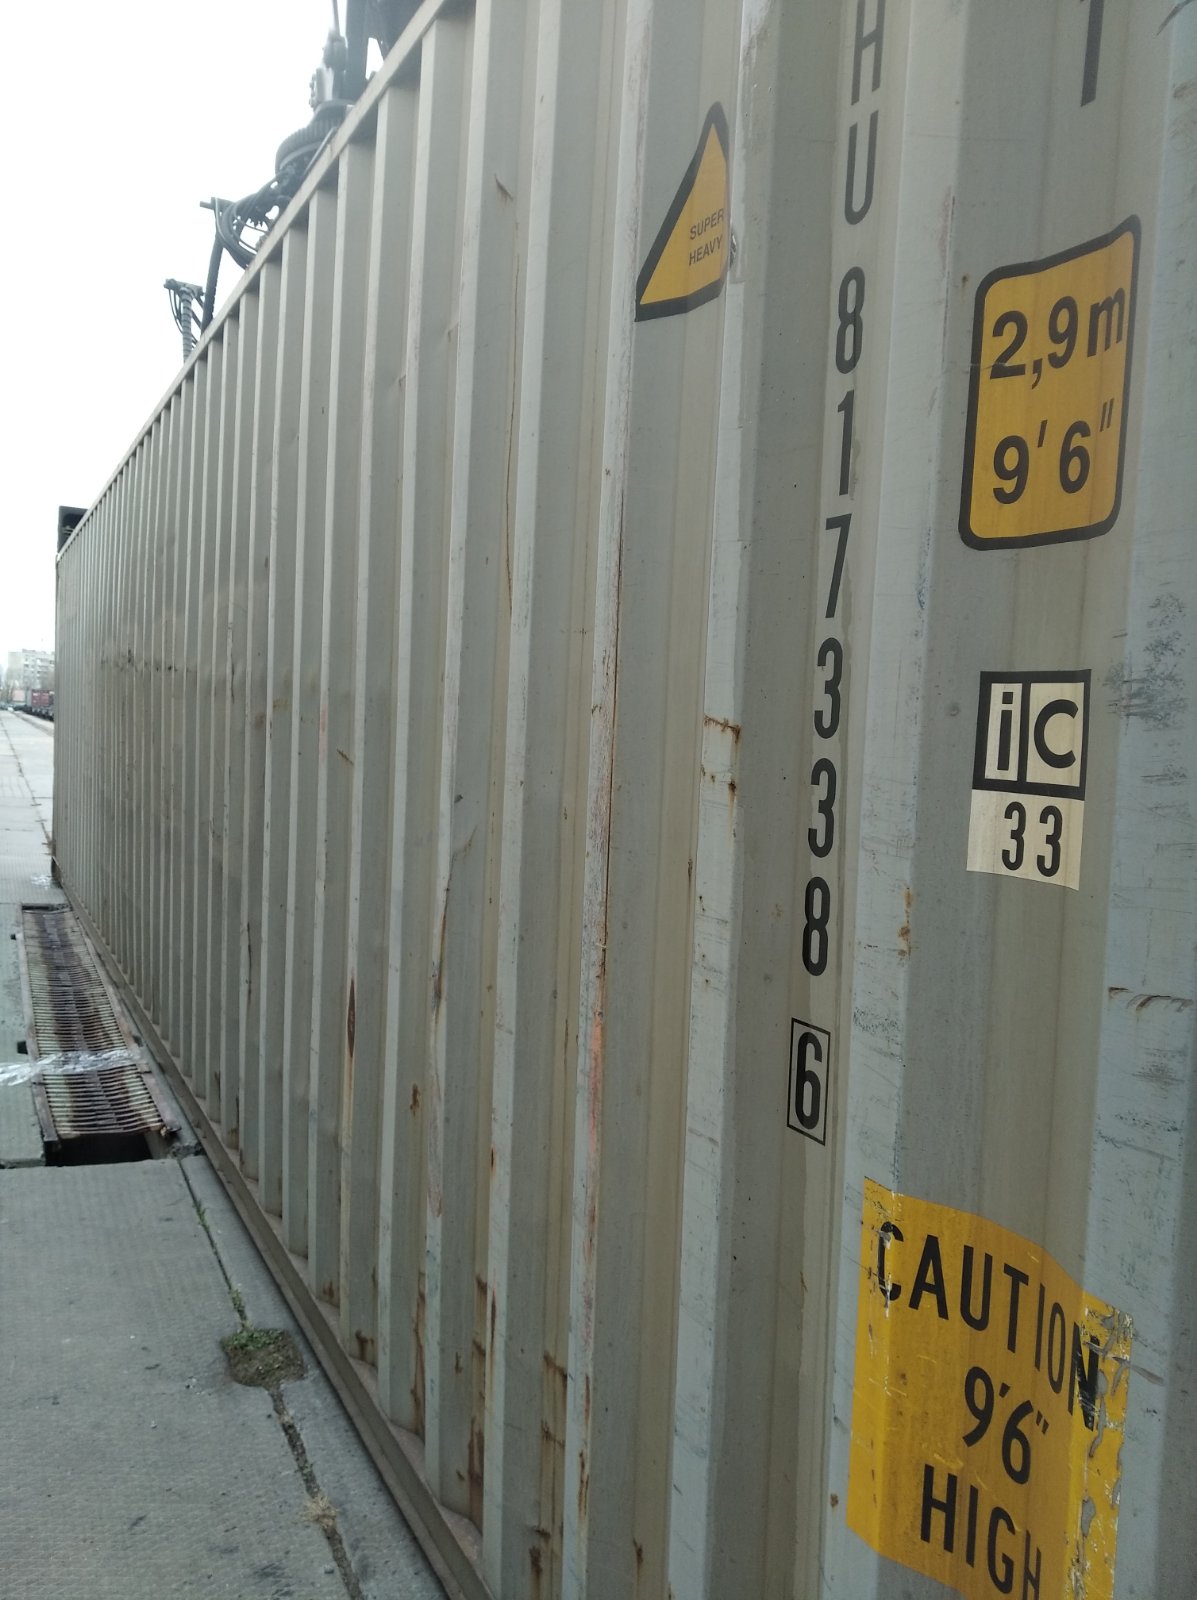 40DC Морские контейнеры 40 футов